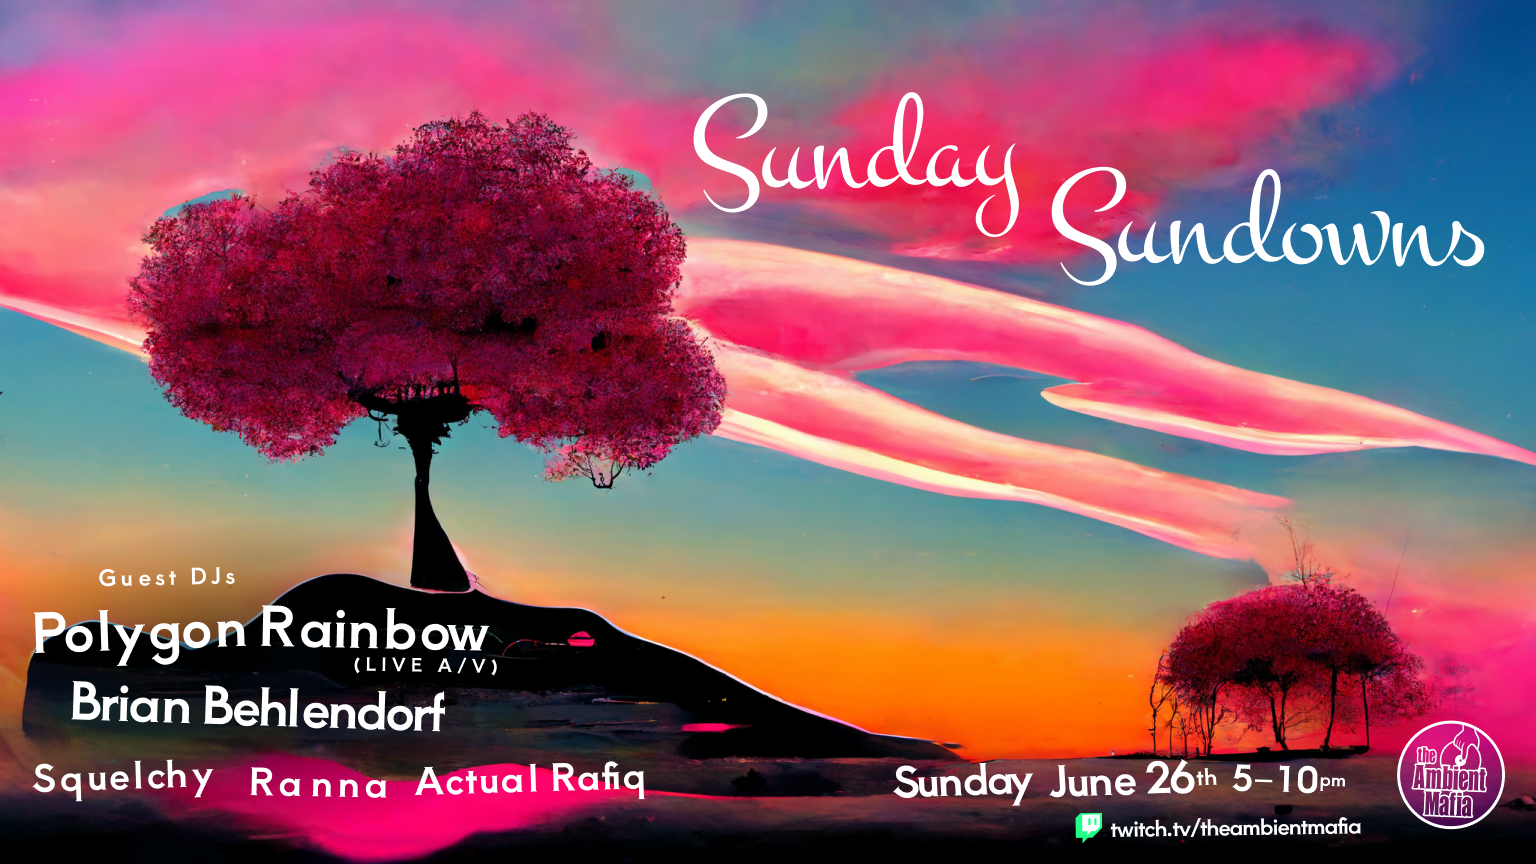 22-06-26-sunday-sundowns-facebook